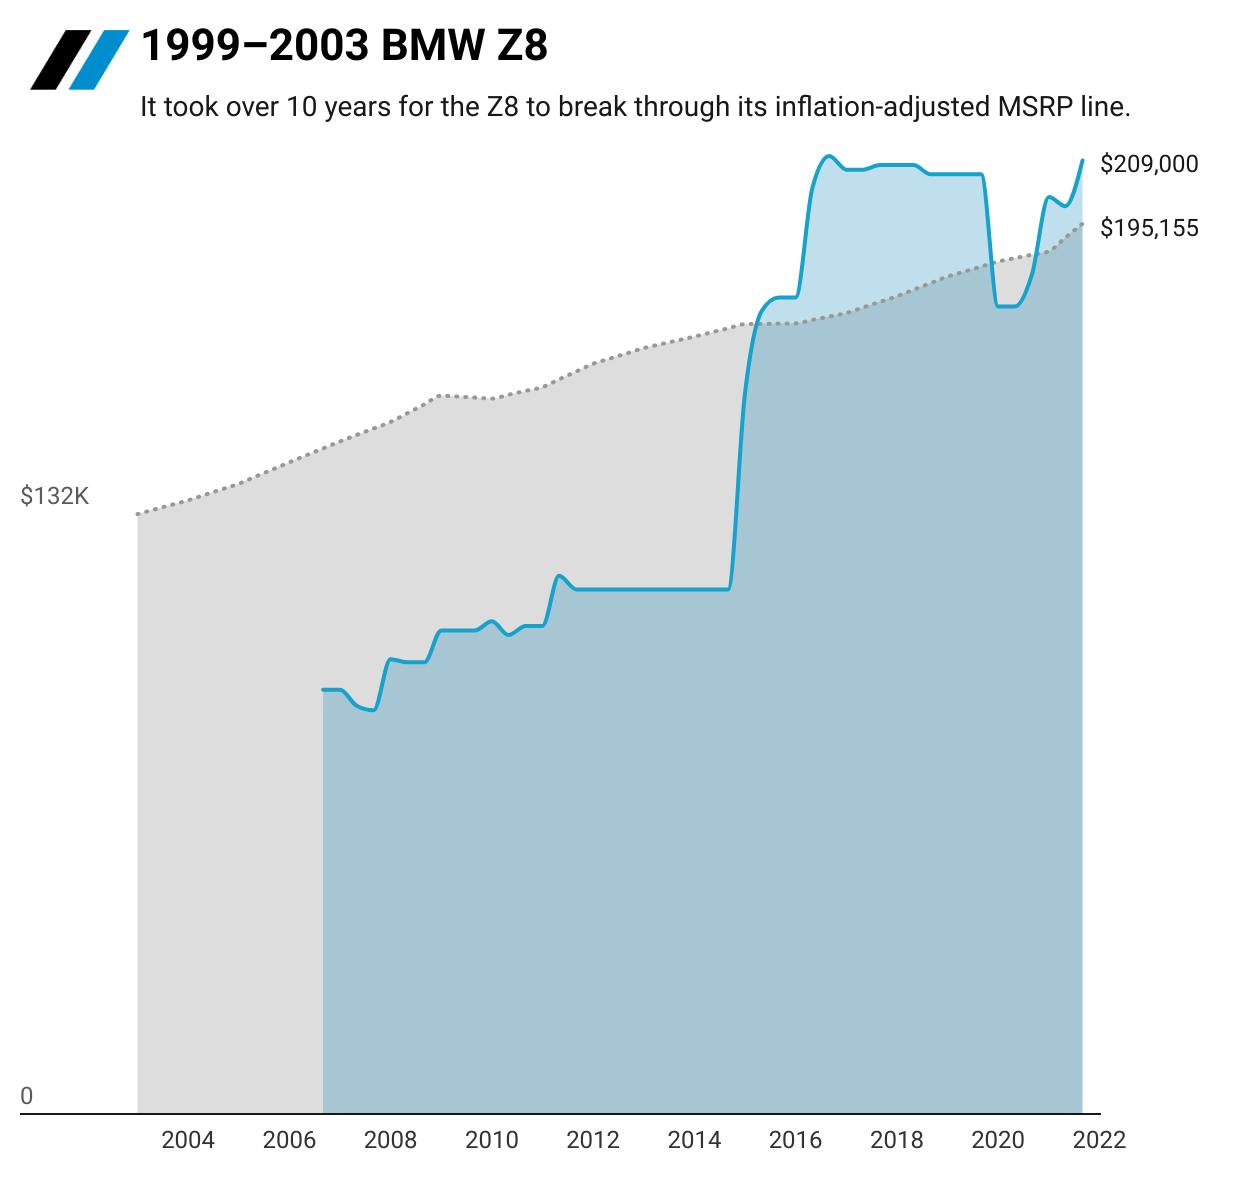 1999-2003 BMW Z8 value graph